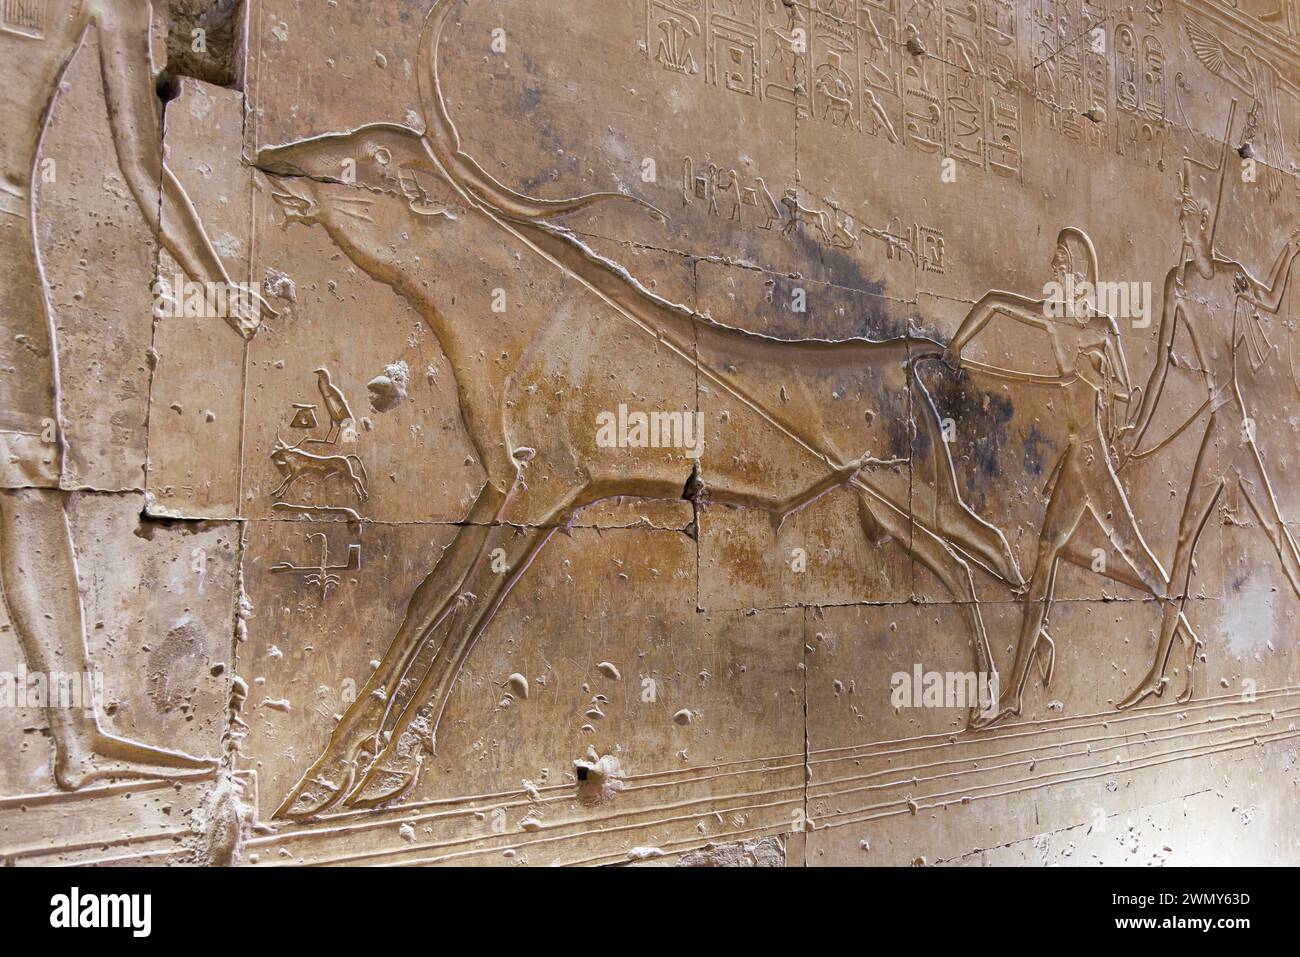 Egitto, Sohag, Abydos, Abydos, città di pellegrinaggio dei faraoni dichiarata Patrimonio dell'Umanità dall'UNESCO, tempio di Seti i, bassorilievo di un toro Foto Stock